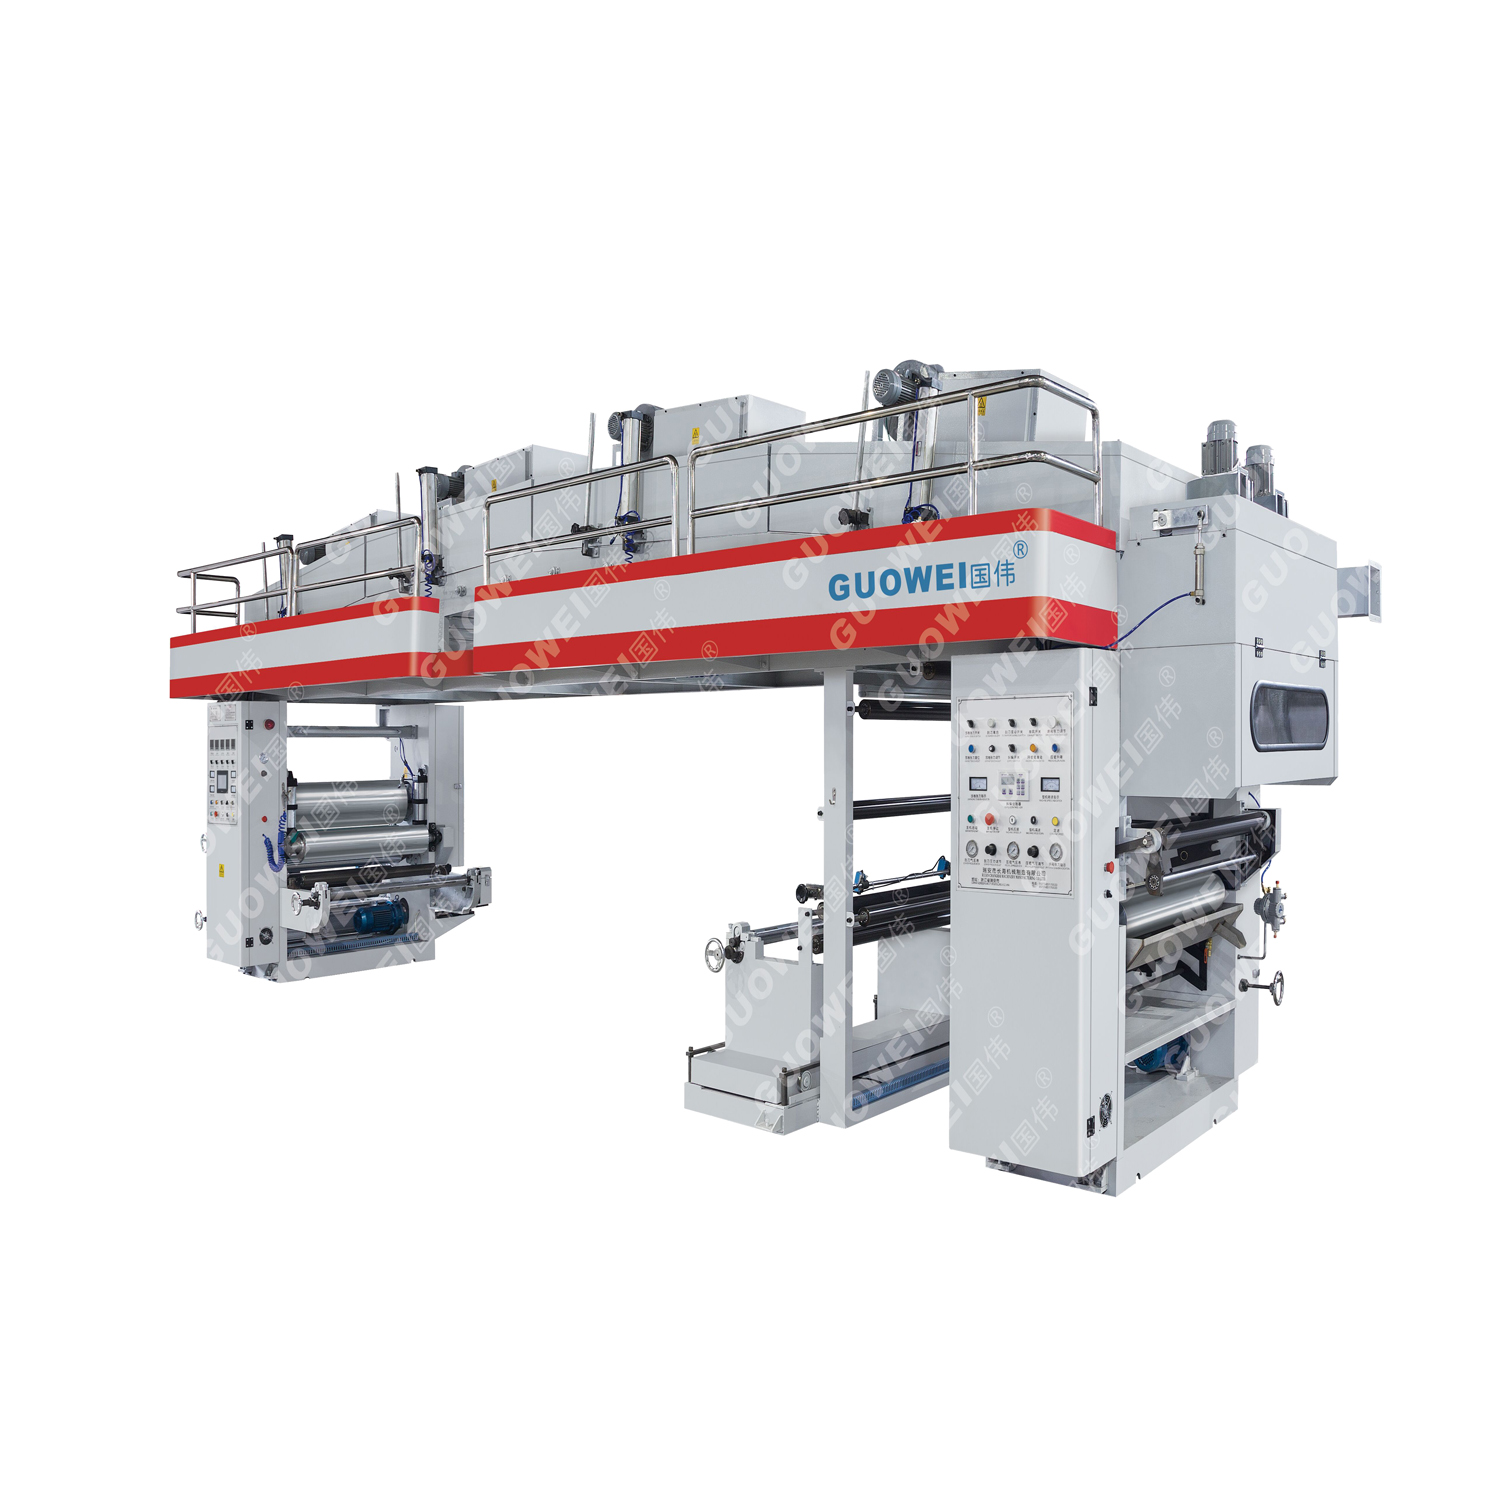 GF-K High Speed Dry Laminating Machine for Plastic Film & aluminum Foil